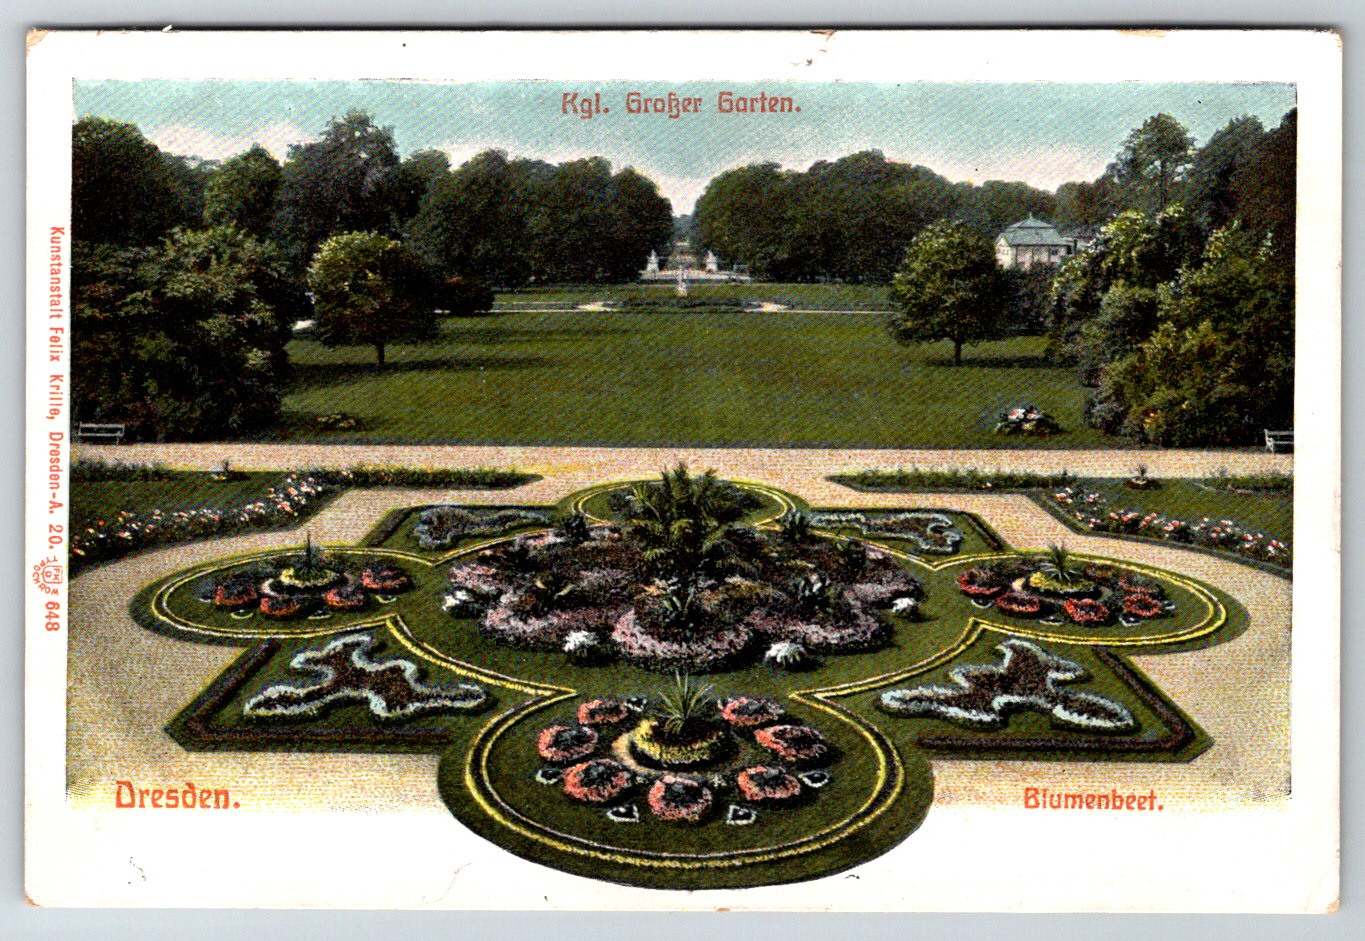 c1920s Dresden Kgl. Groker Garten Blumenbeet Germany Garden Antique Postcard